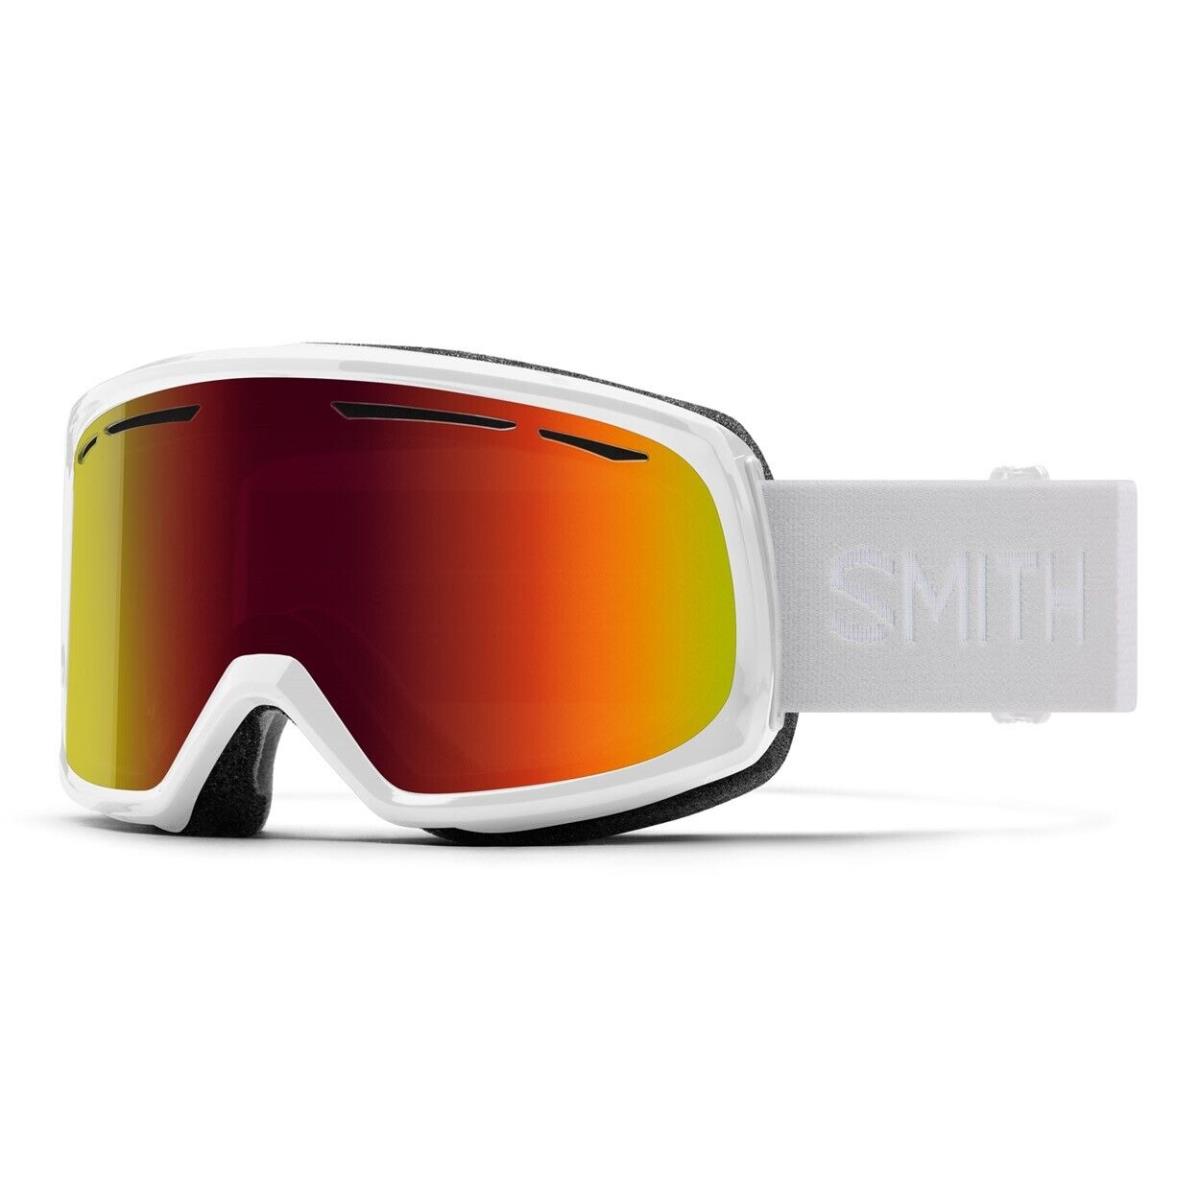 Smith Drift Ski / Snow Goggles White Frame Red Sol-x Mirror Lens - Red, White